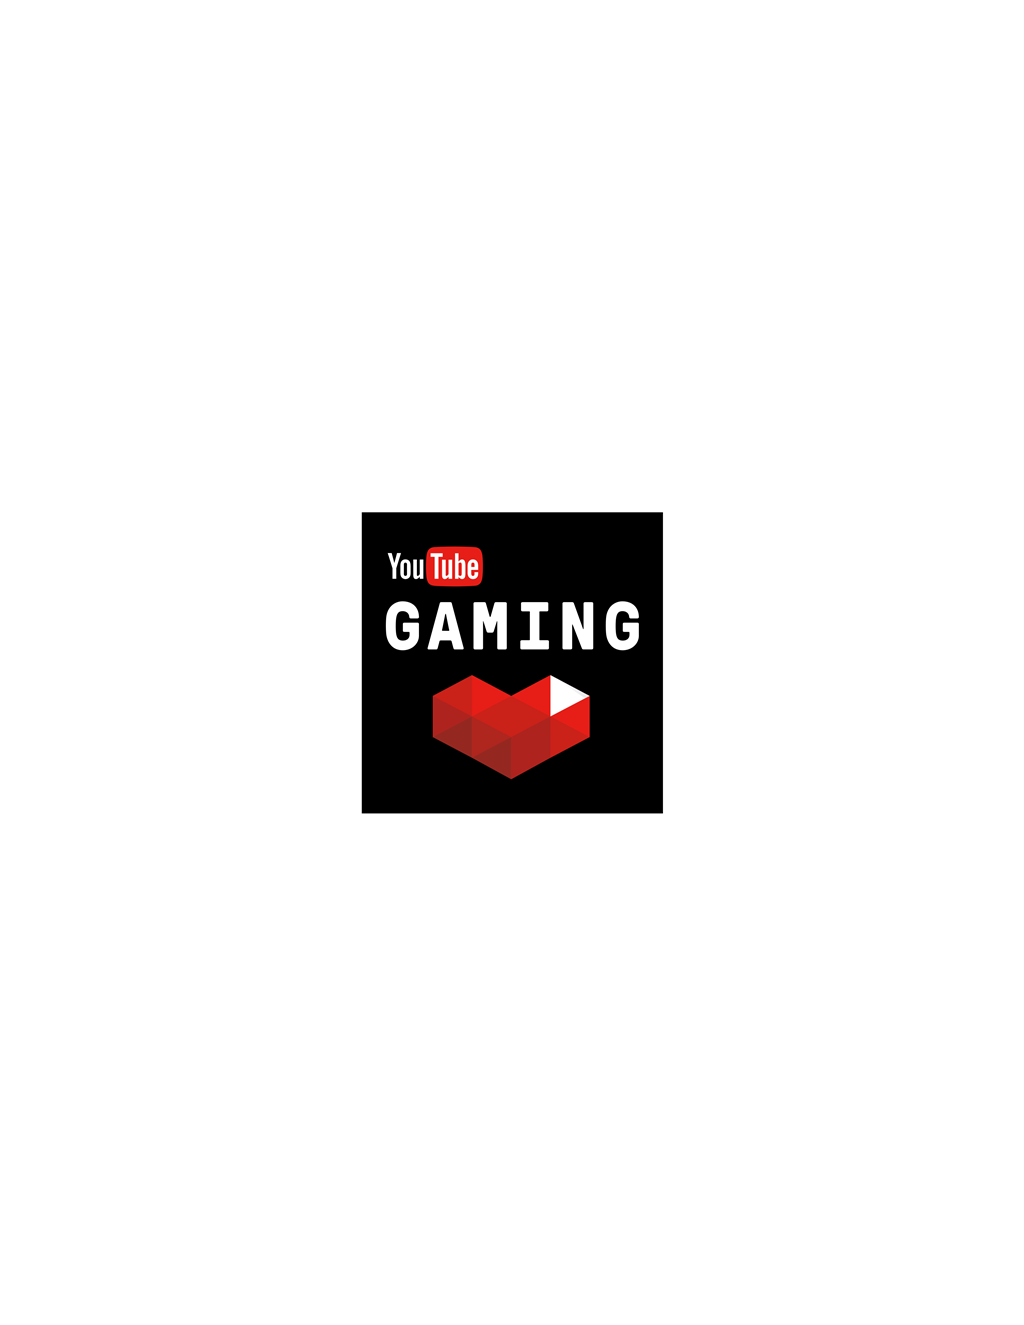 YouTube Gaming logotype, transparent .png, medium, large